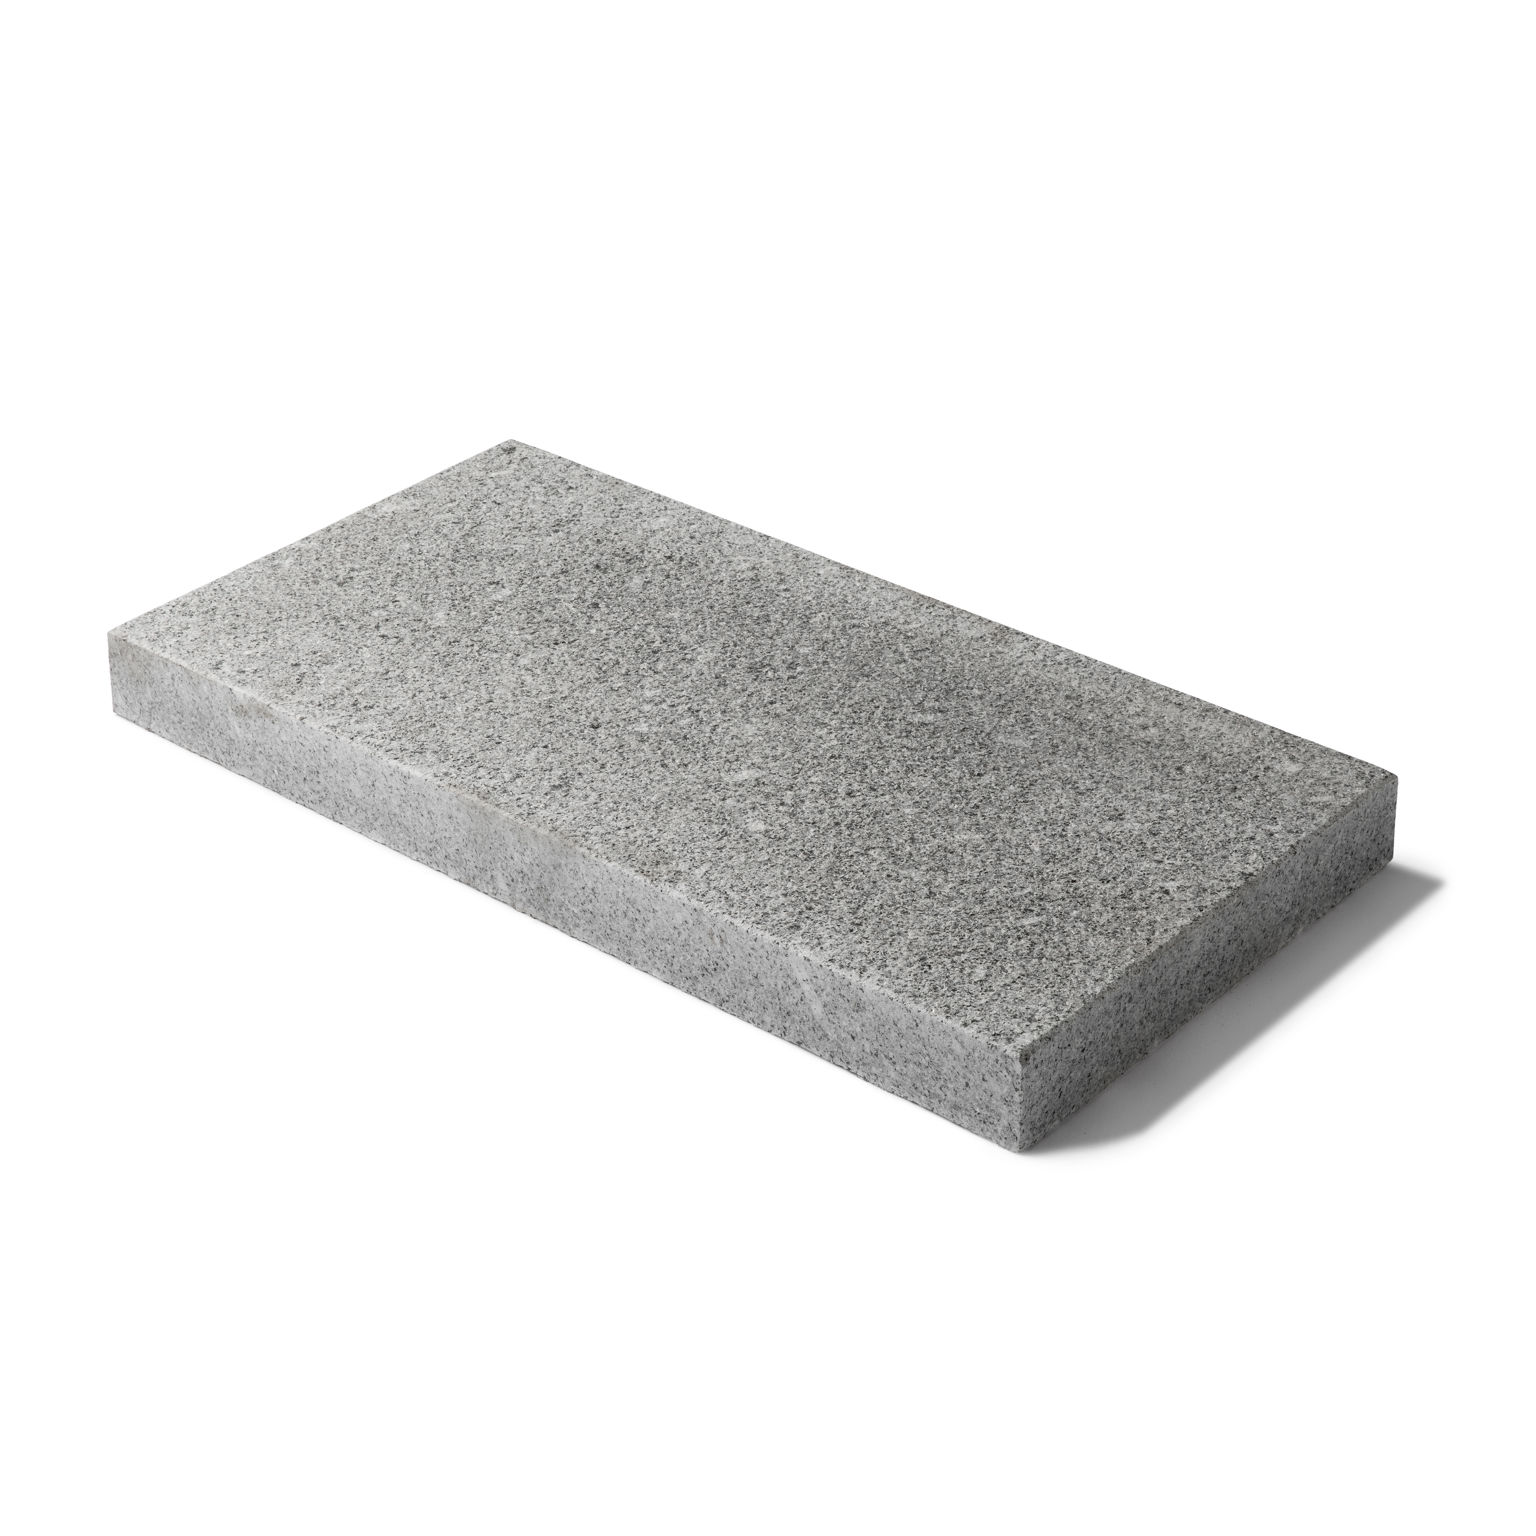 Produktbild på en granithäll med måtten 700x350x60 mm i materialet Porto grå.